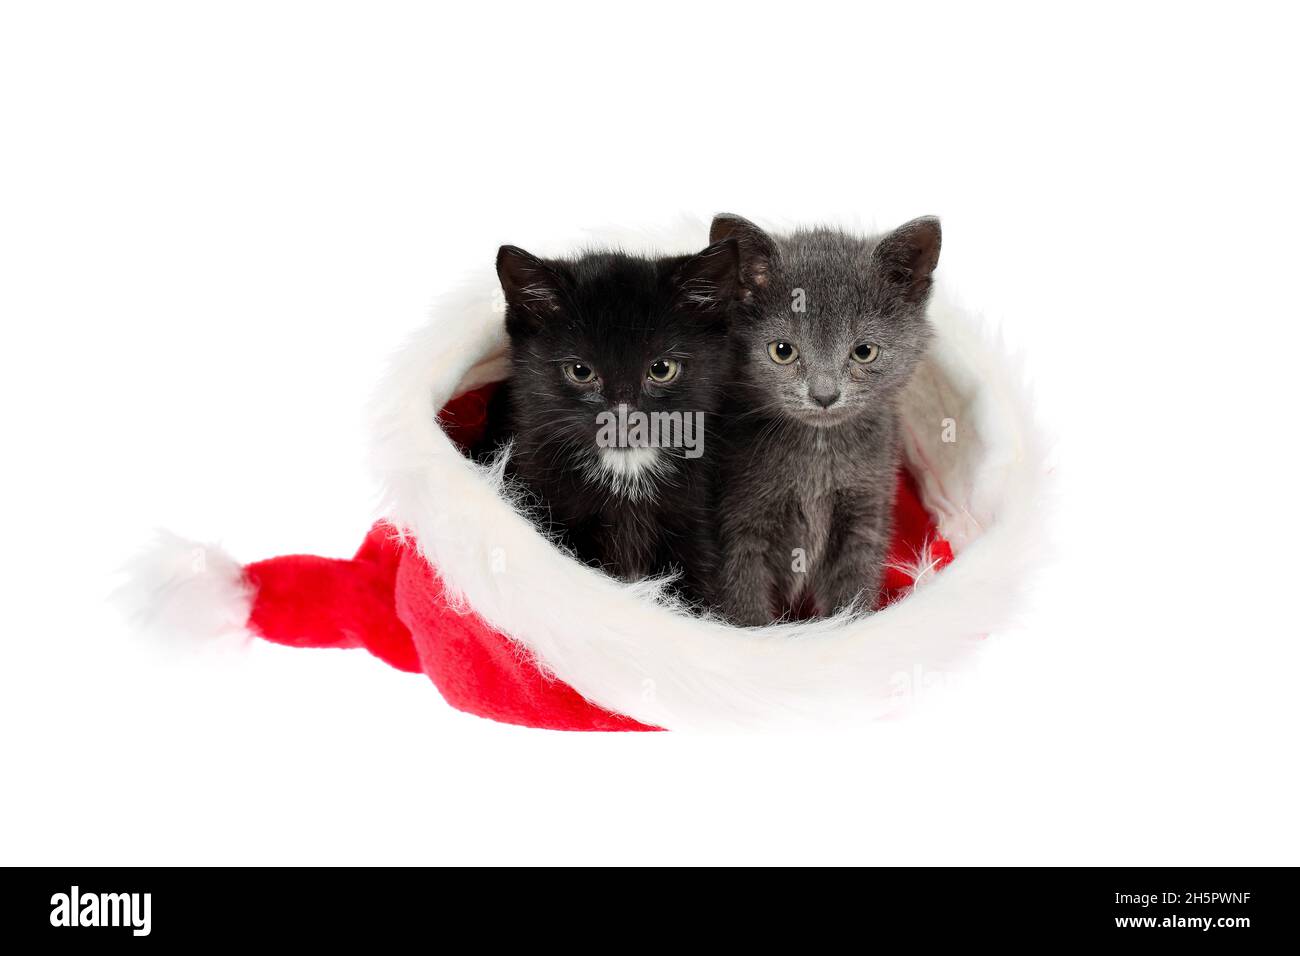 Due adorabili cuccioli, un grigio e un nero con uno bianco, seduti in un cappello di Natale di Santa, che appaiono leggermente arrabbiati. Isolato su sfondo bianco Foto Stock